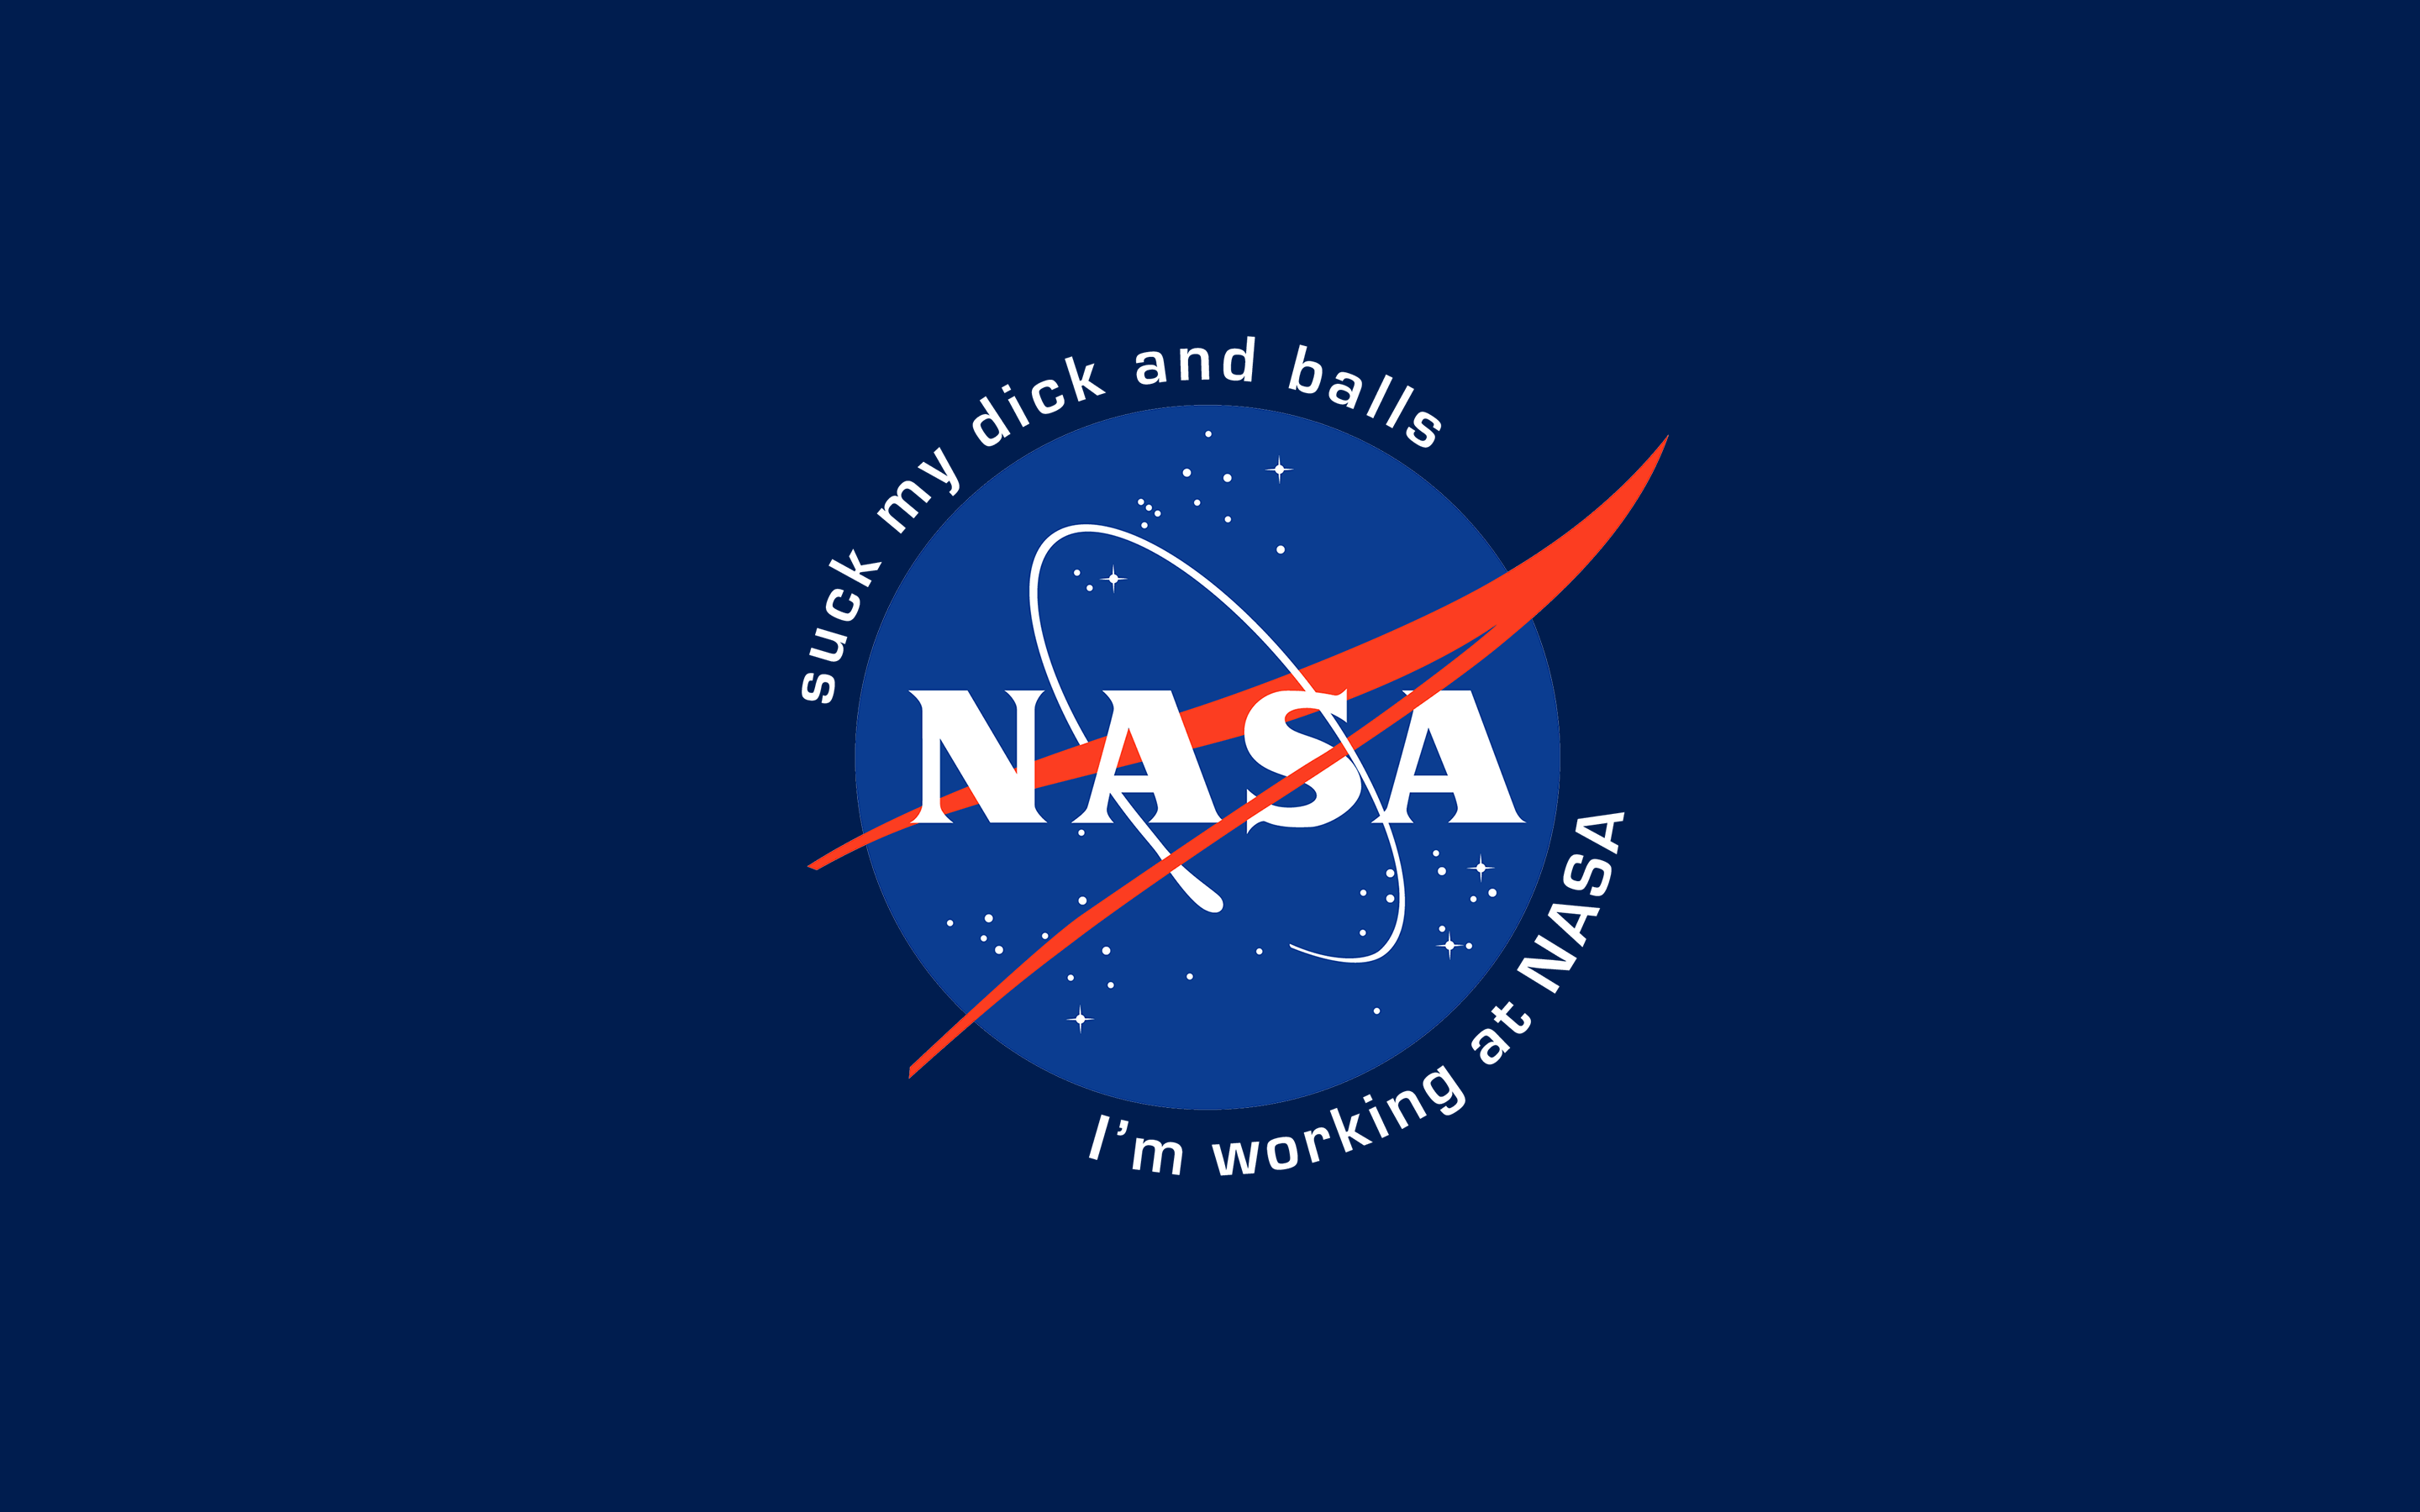 NASA wallpaper (2880x1800). Nasa wallpaper, Nasa, 2880x1800 wallpaper